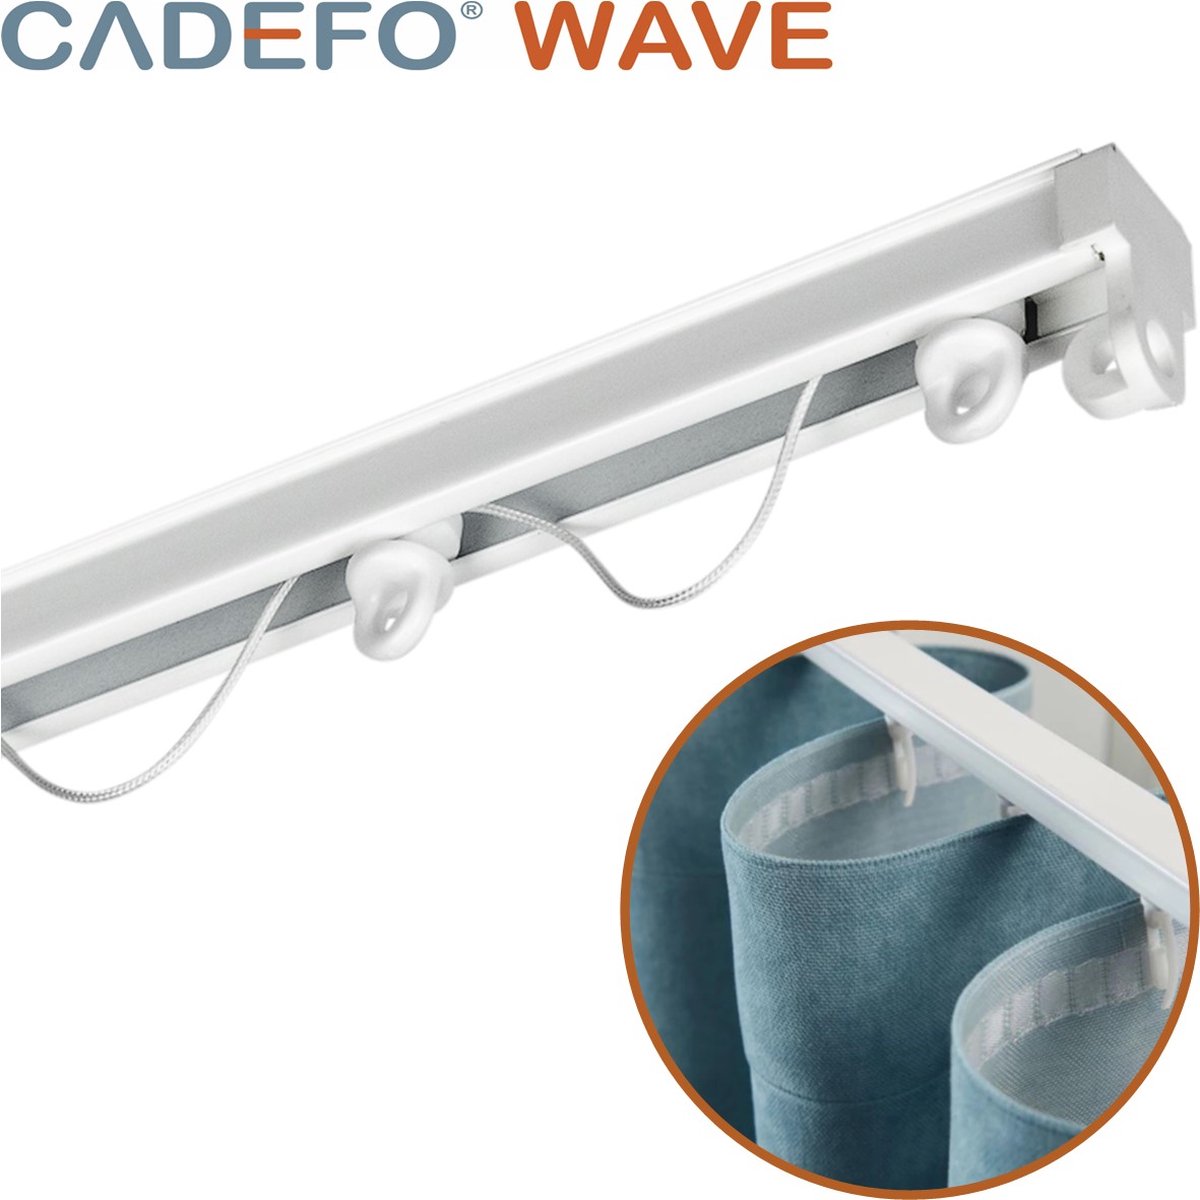 CADEFO WAVE (401 - 450 cm) Gordijnrails - Compleet op maat! - UIT 1 STUK - Leverbaar tot 6 meter - Plafondbevestiging - Lengte 447 cm